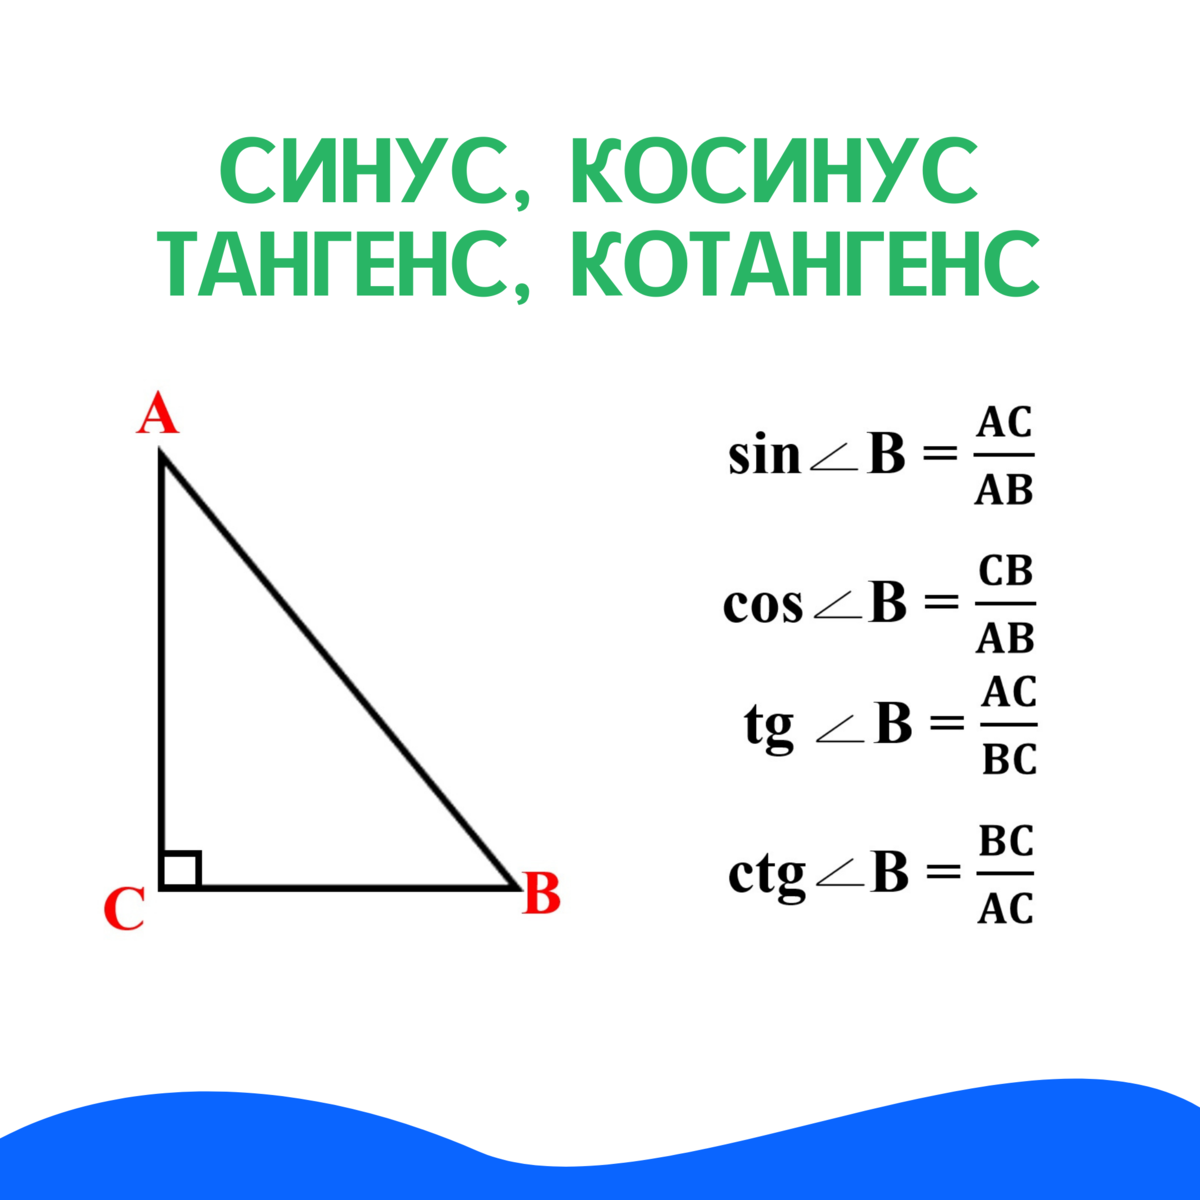 Дайте определение синуса косинуса и тангенса. Геометрия синус косинус тангенс. Синусфы косинуся тангне. Синус косинус тангенс котангенс. Синус тангенс котангенс в прямоугольном треугольнике.